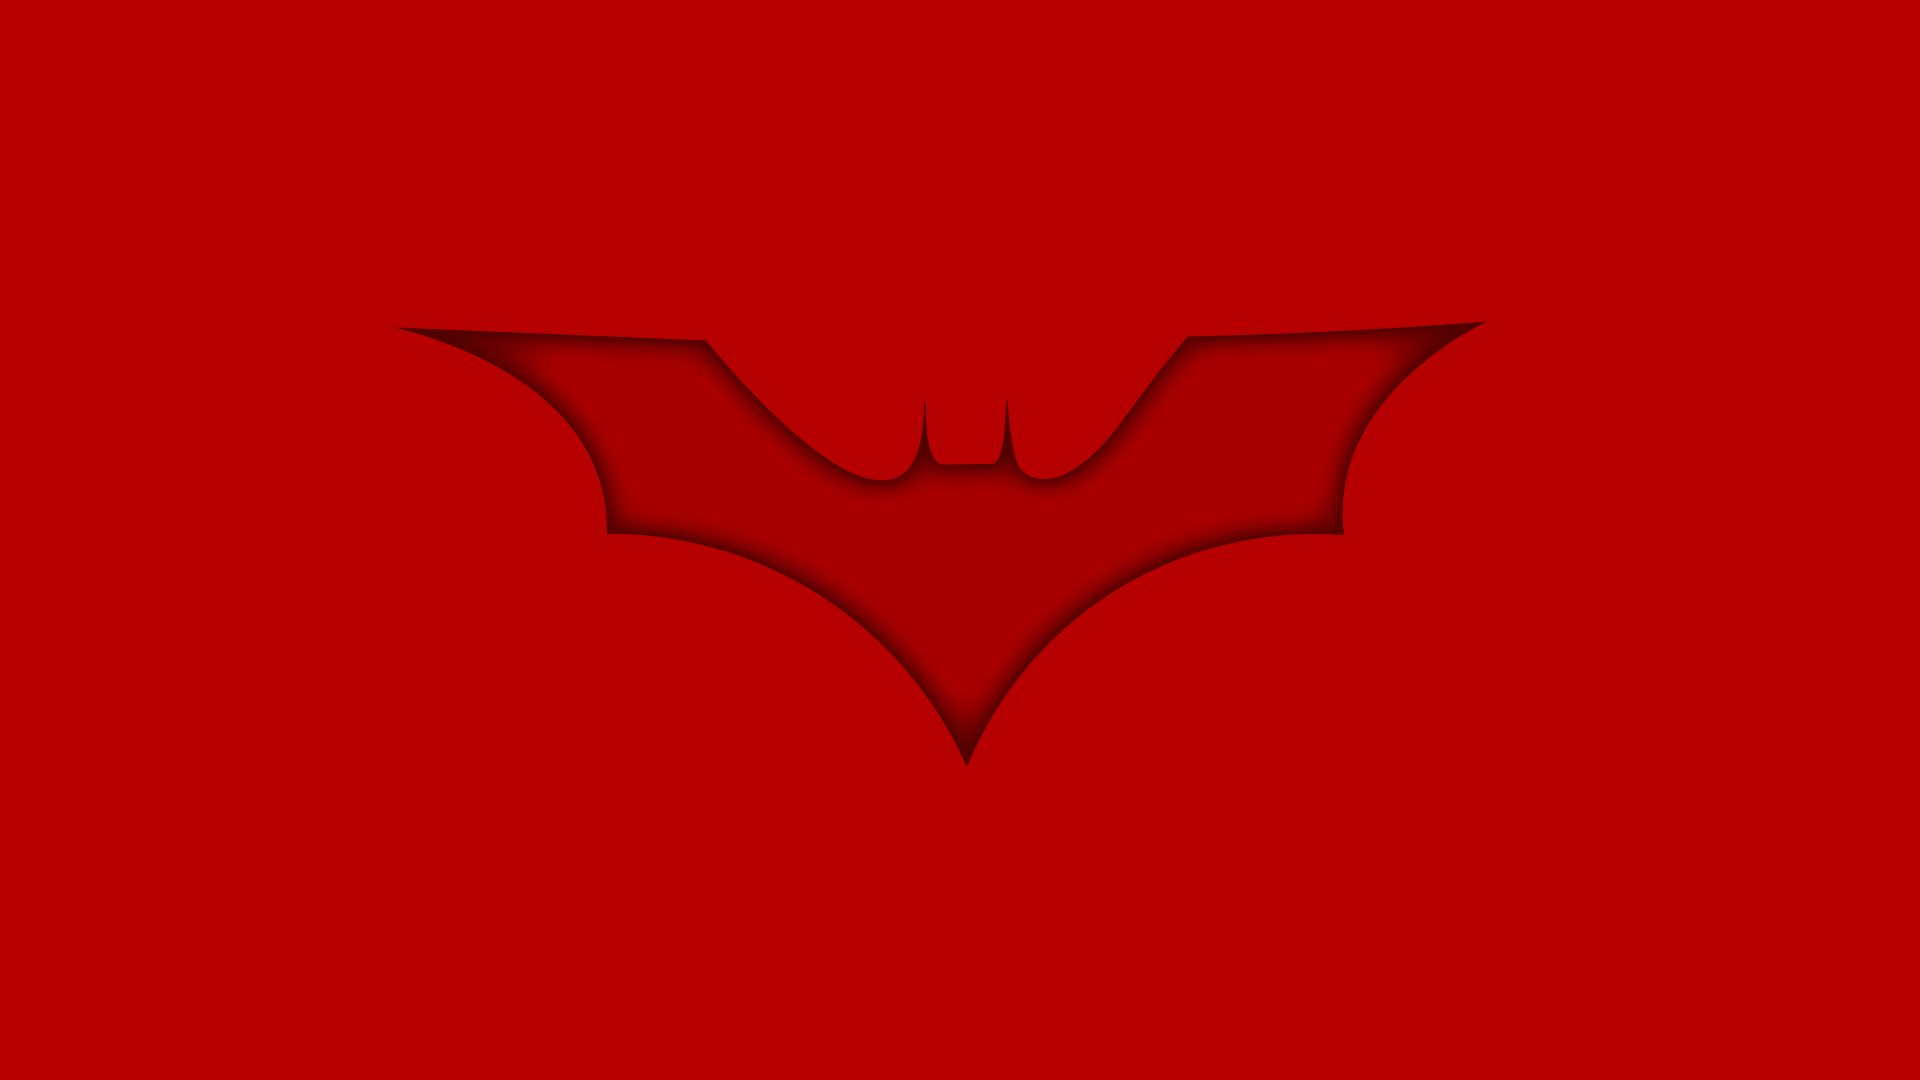 Скачать обои бесплатно Комиксы, Бэтмен, Логотип Бэтмена картинка на рабочий стол ПК